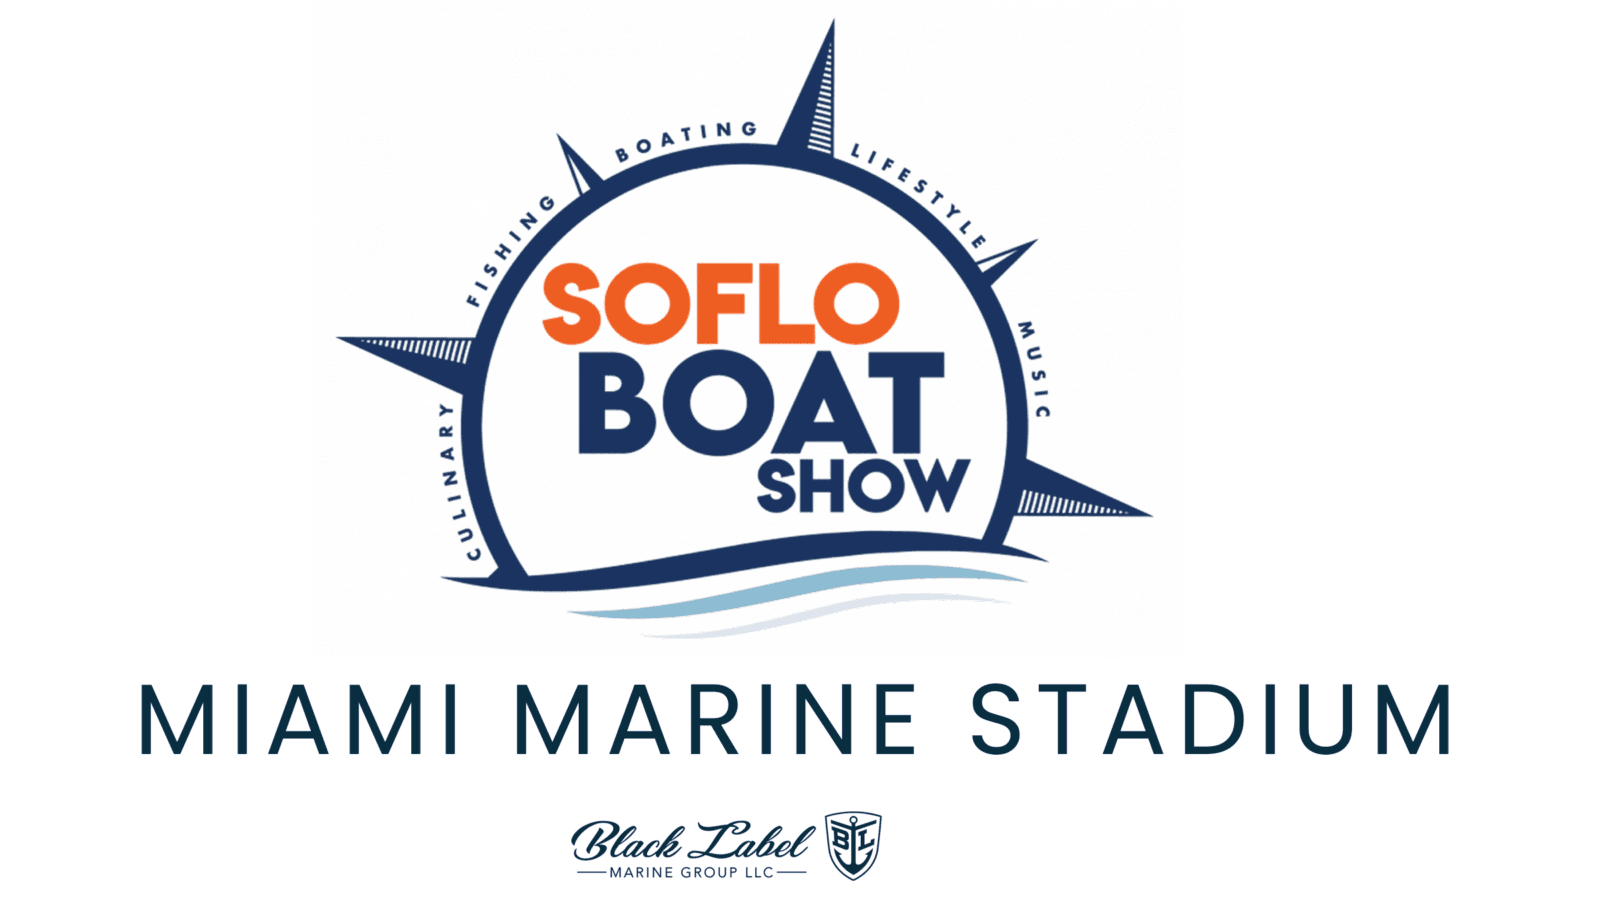 Soflo-boat-show-miami-marine-stadium